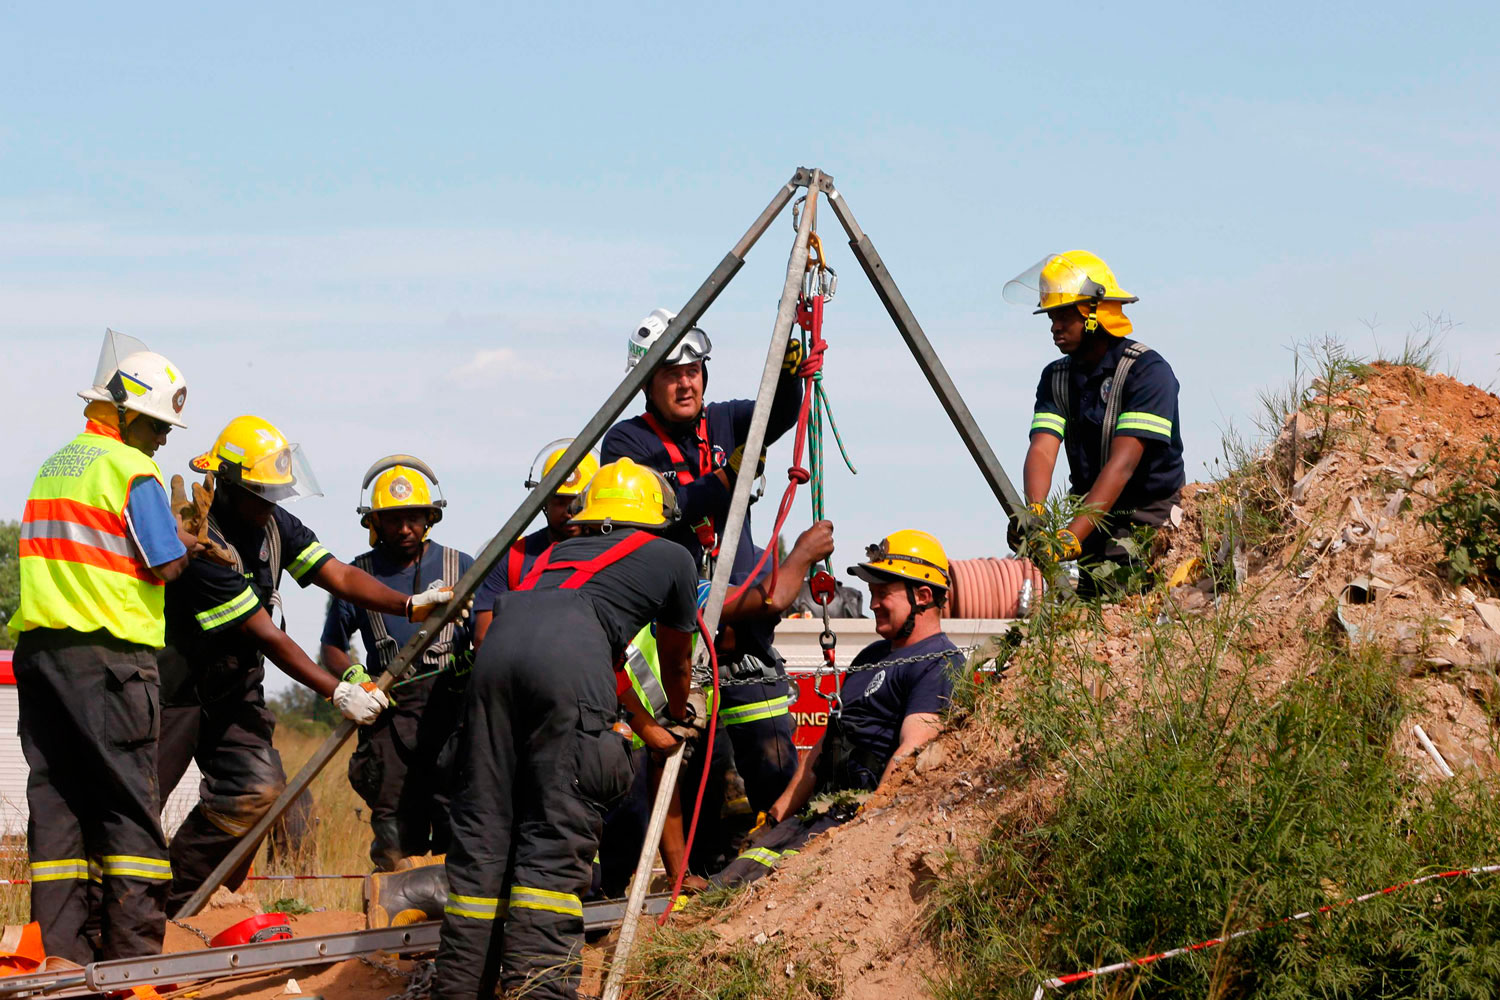 Mineros ilegales atrapados en una mina de oro rechazan el rescate para evitar su arresto